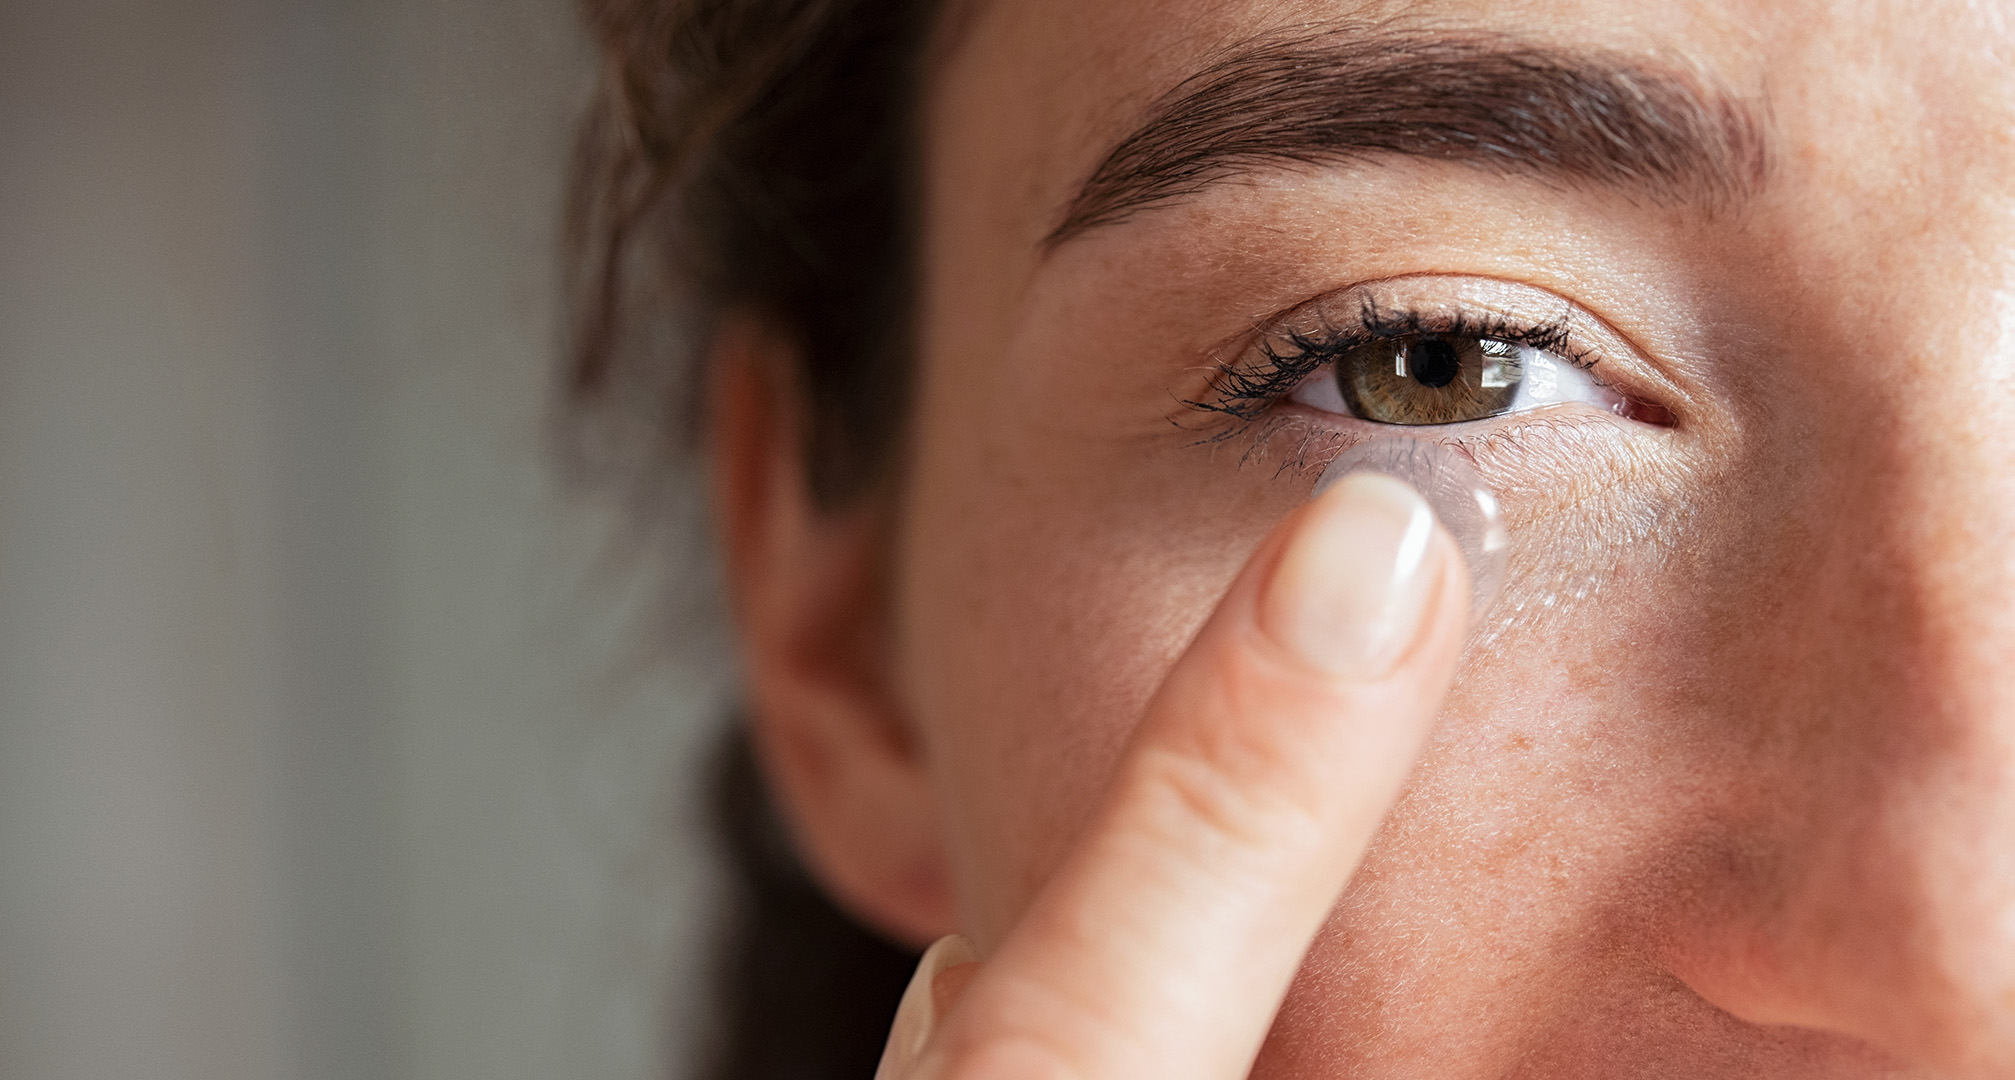 närbild av en person som håller en kontaktlins framför ögat